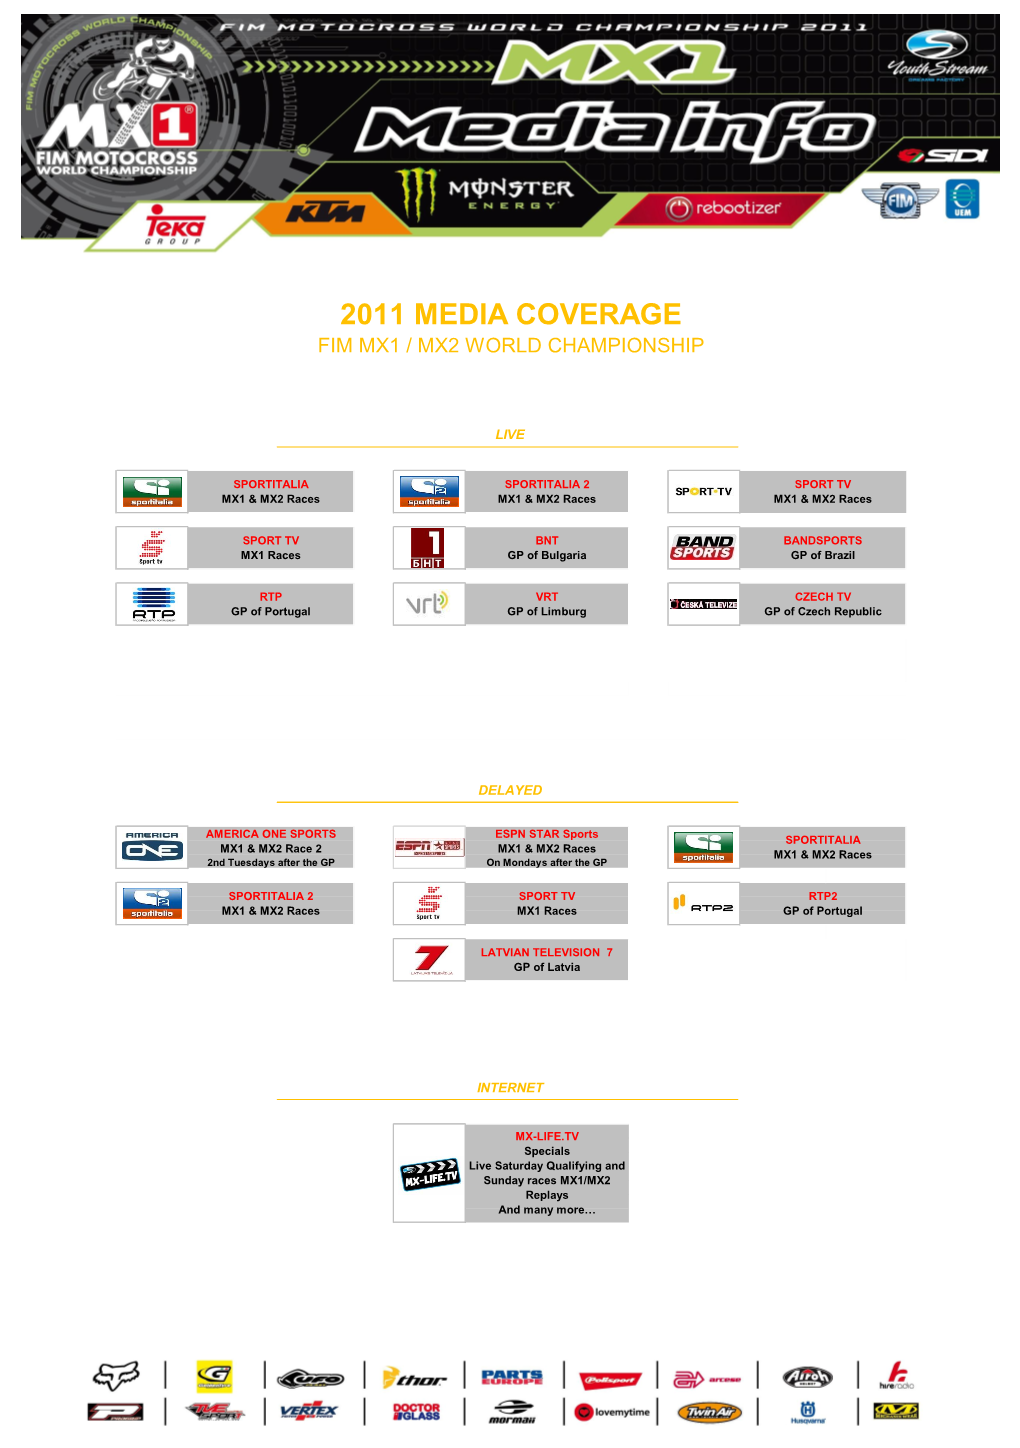 2011 Media Coverage Fim Mx1 / Mx2 World Championship